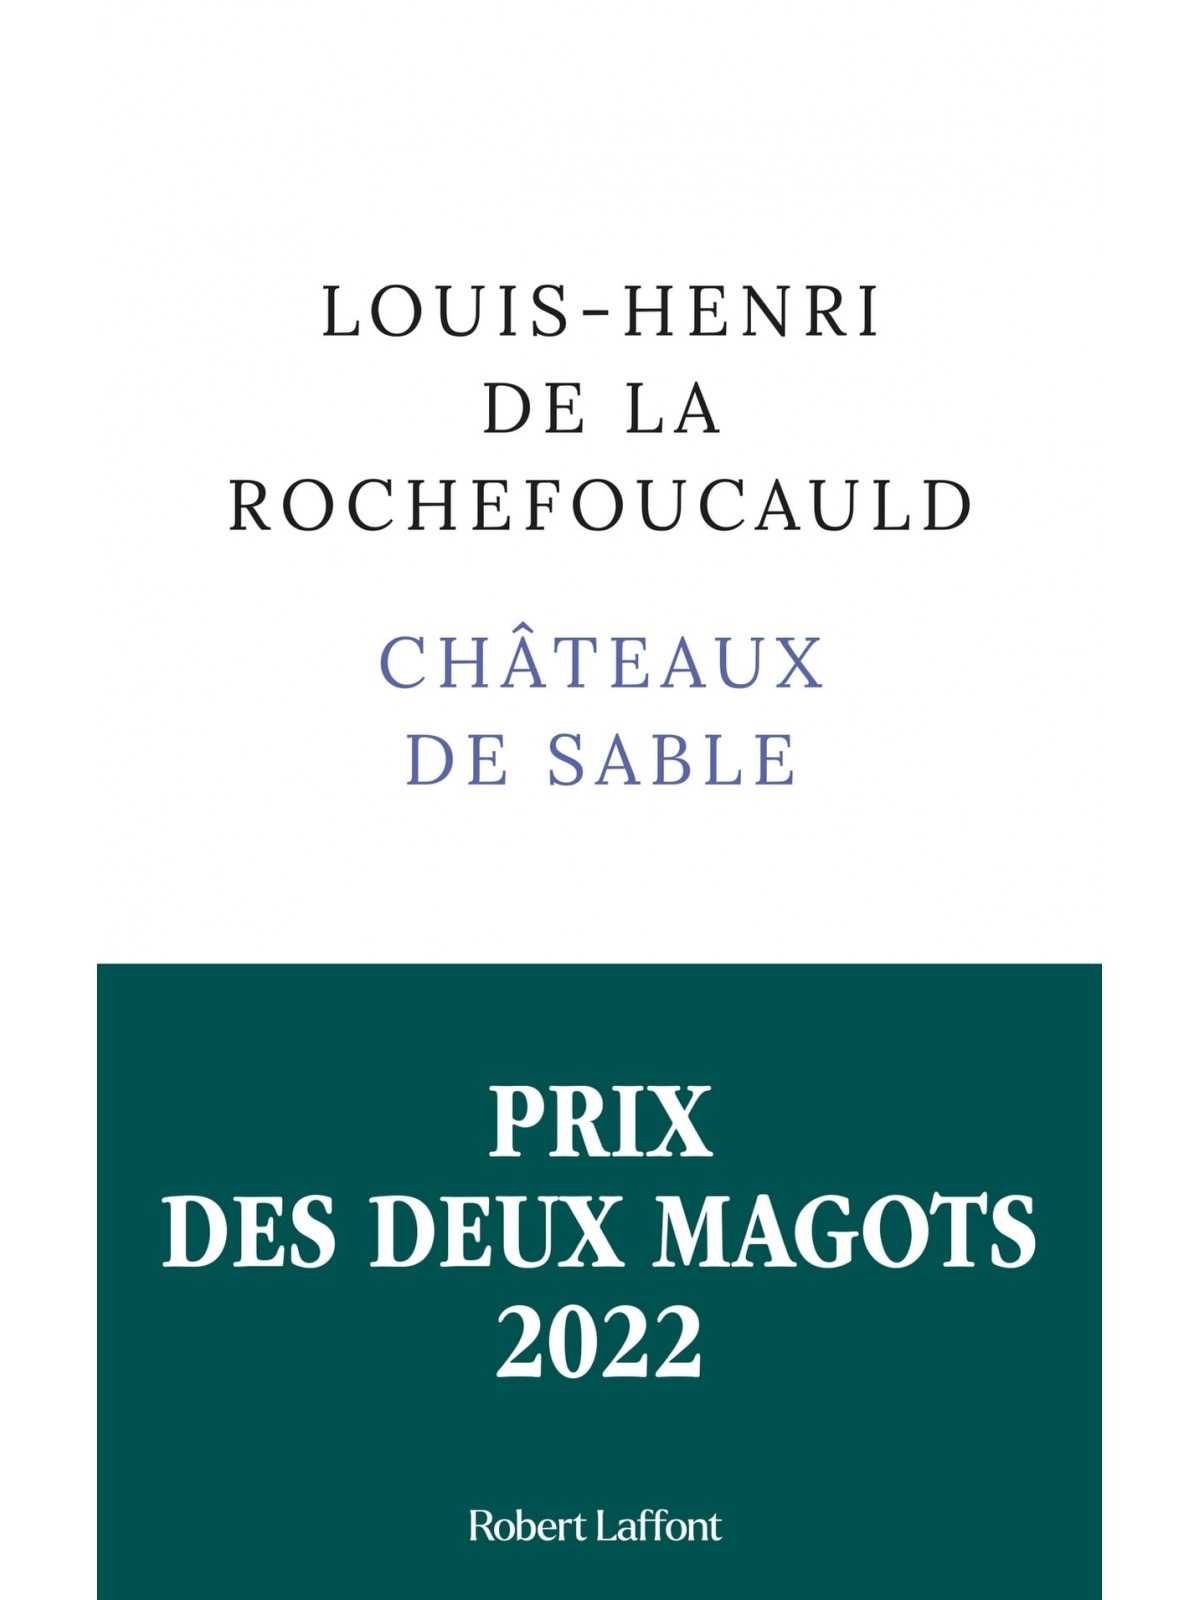 Louis-Henri De La Rochefoucauld : Châteaux de sable (Prix des Deux Magots 2022)